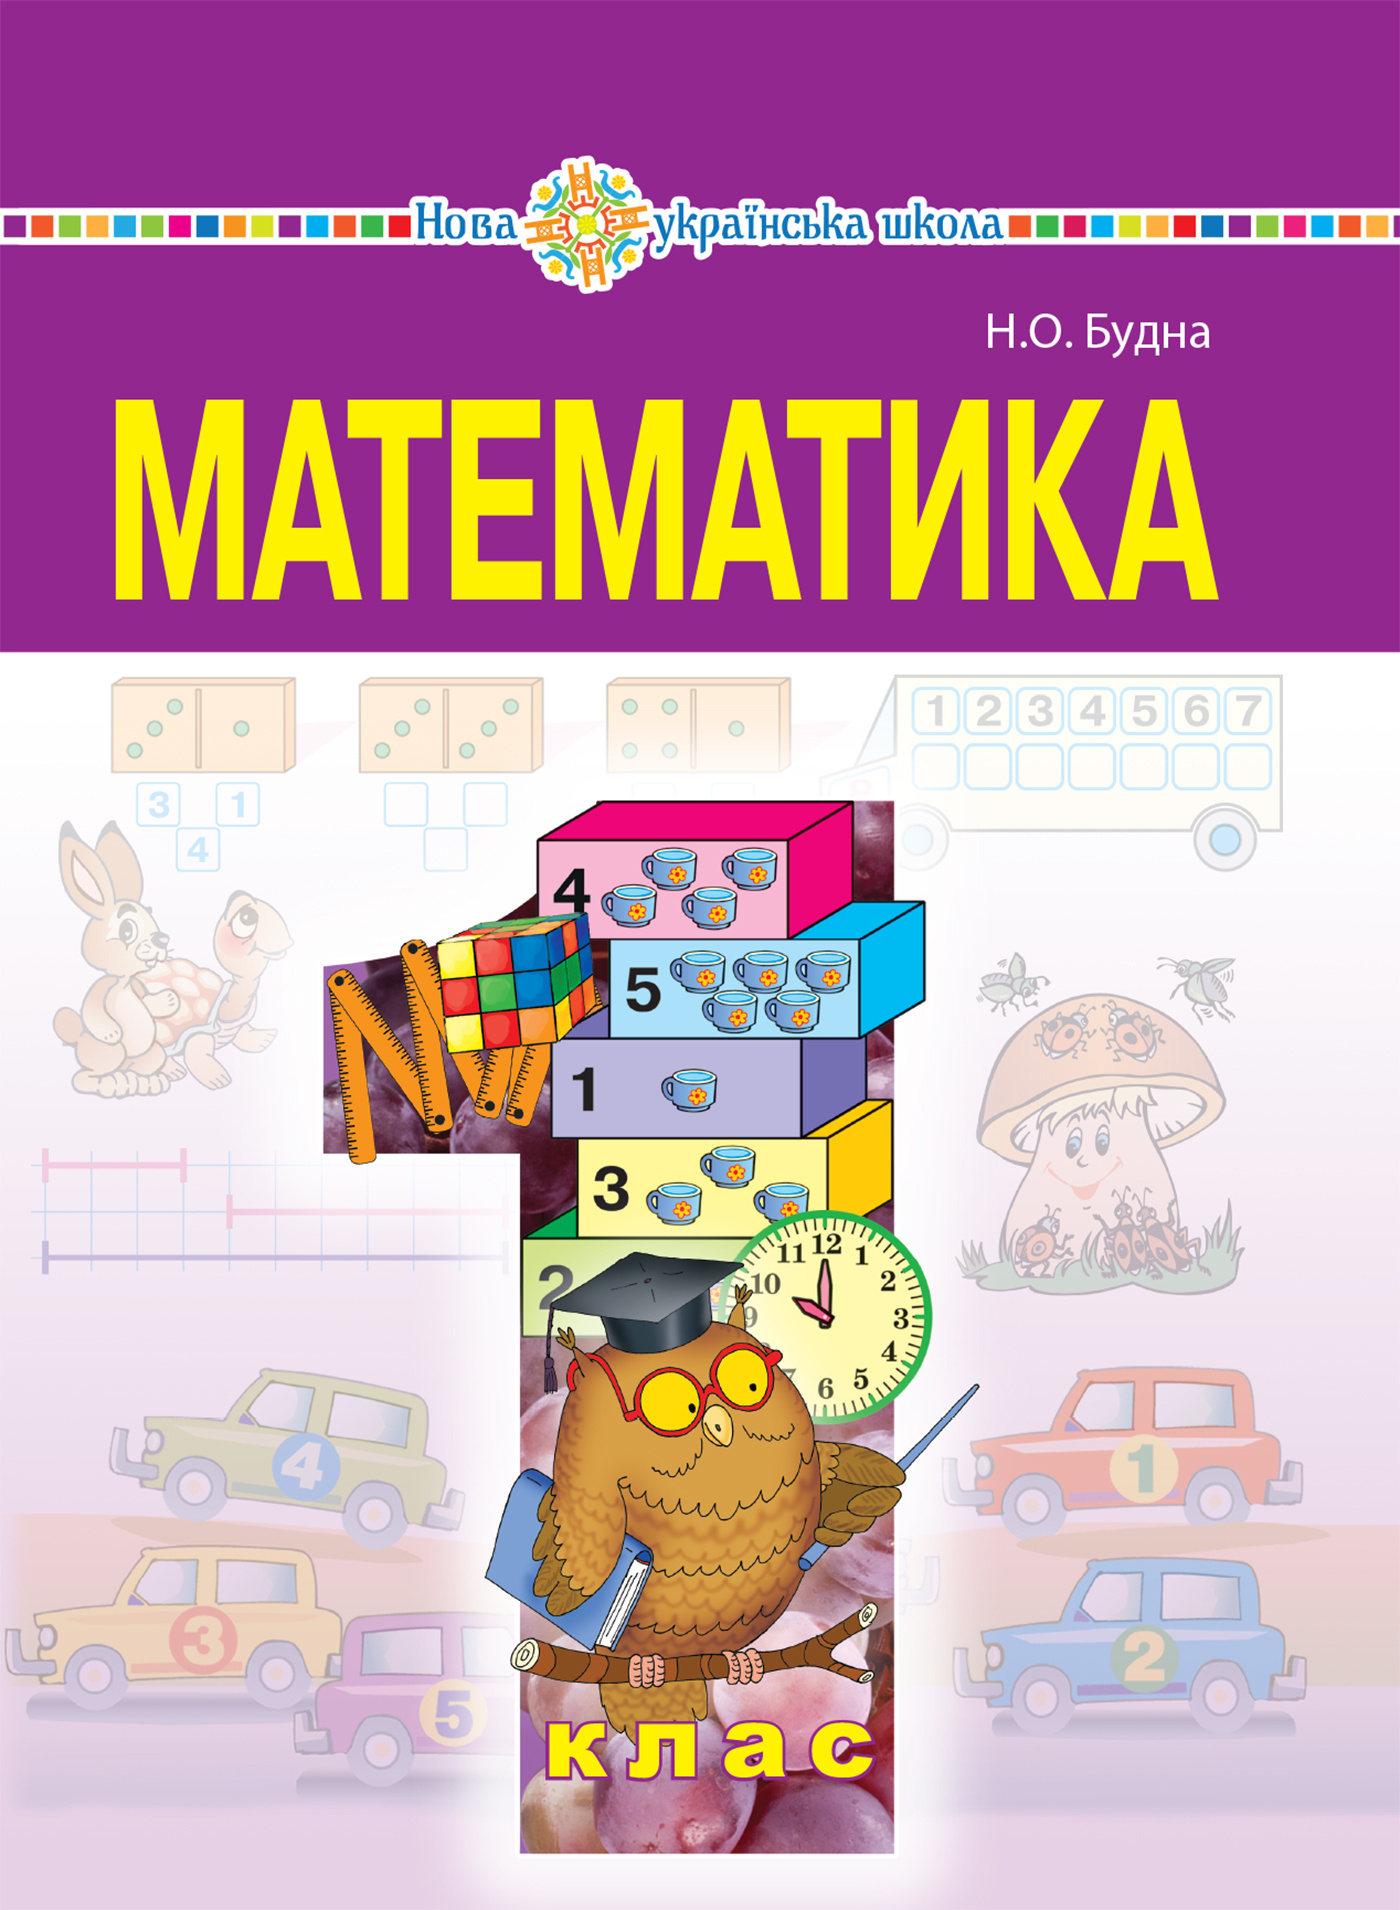 "Математика" підручник для 1 класу загальноосвітніх навчальних закладів  (2019 год). Автор — Наталія Будна. 